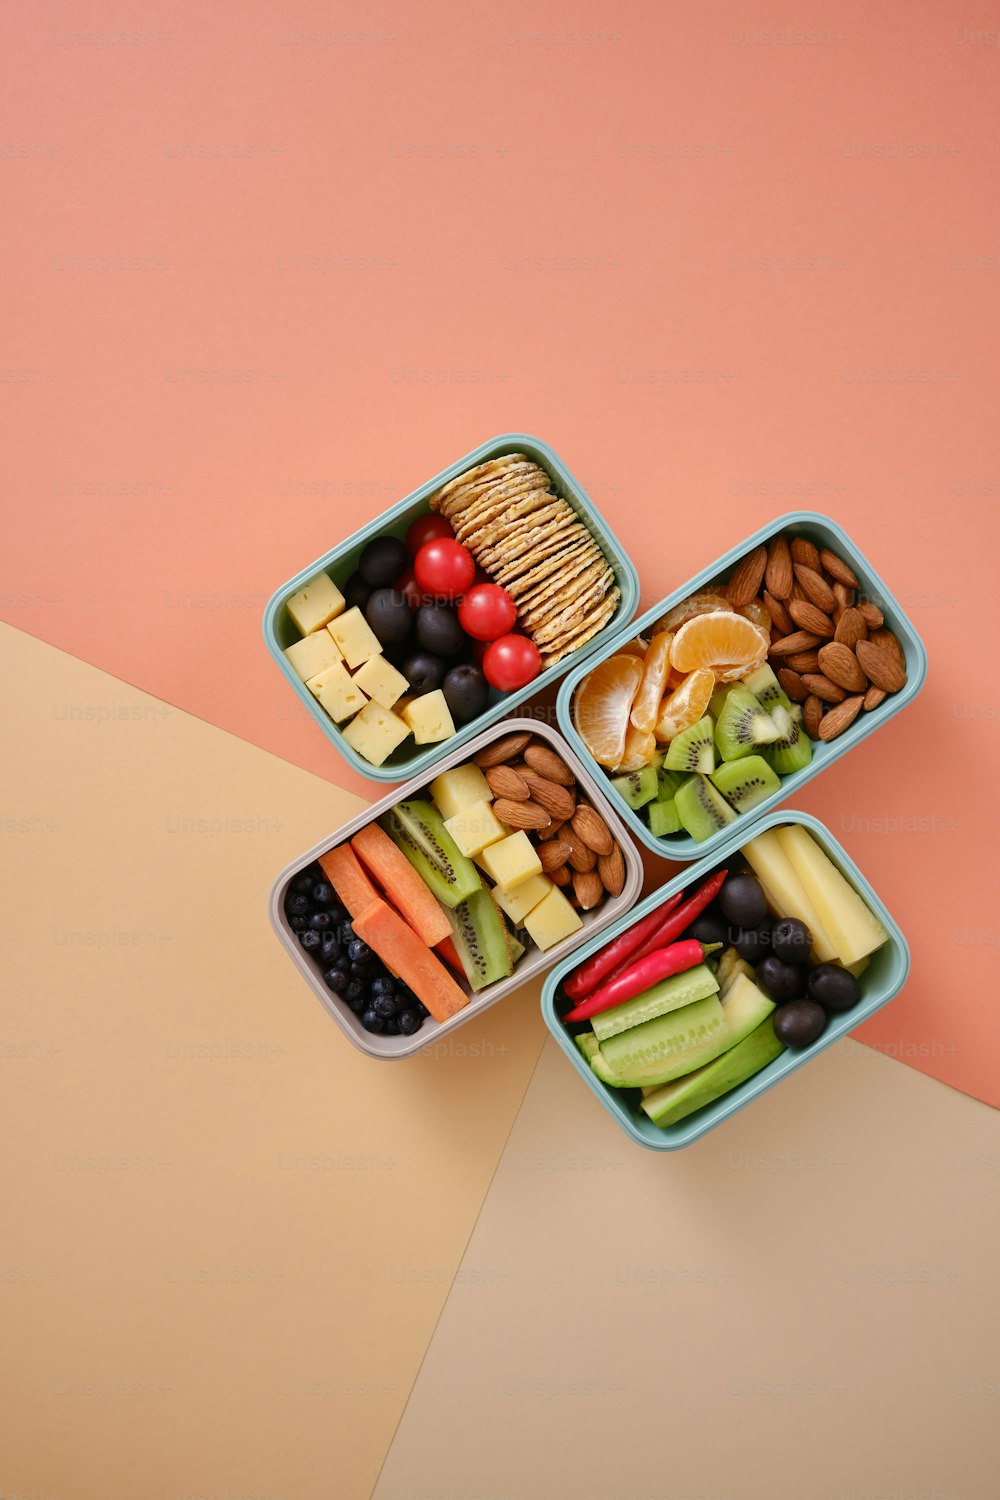 Cuatro recipientes de plástico llenos de diferentes tipos de alimentos